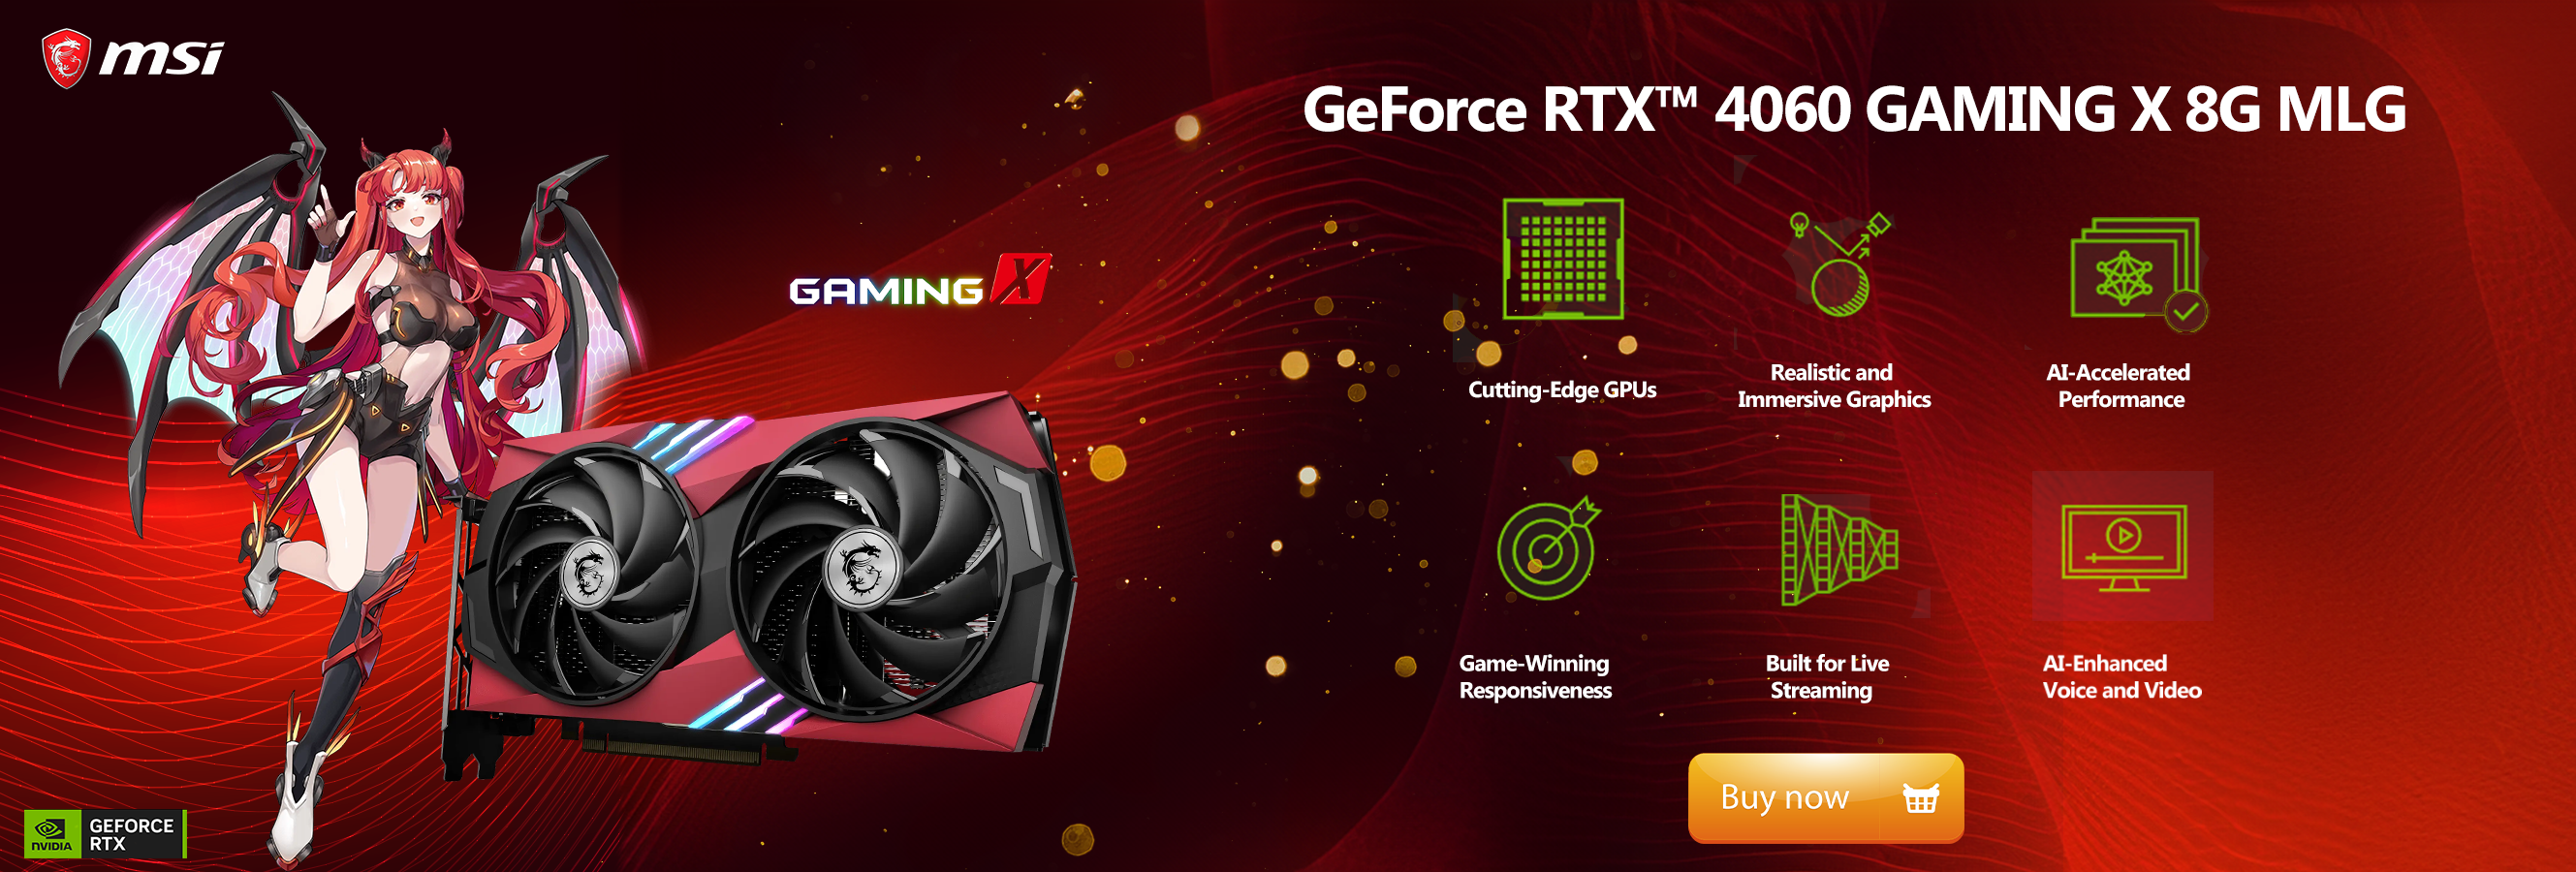 MSI GeForce RTX 4060 Gaming X 8G MLG 8GB GDDR6